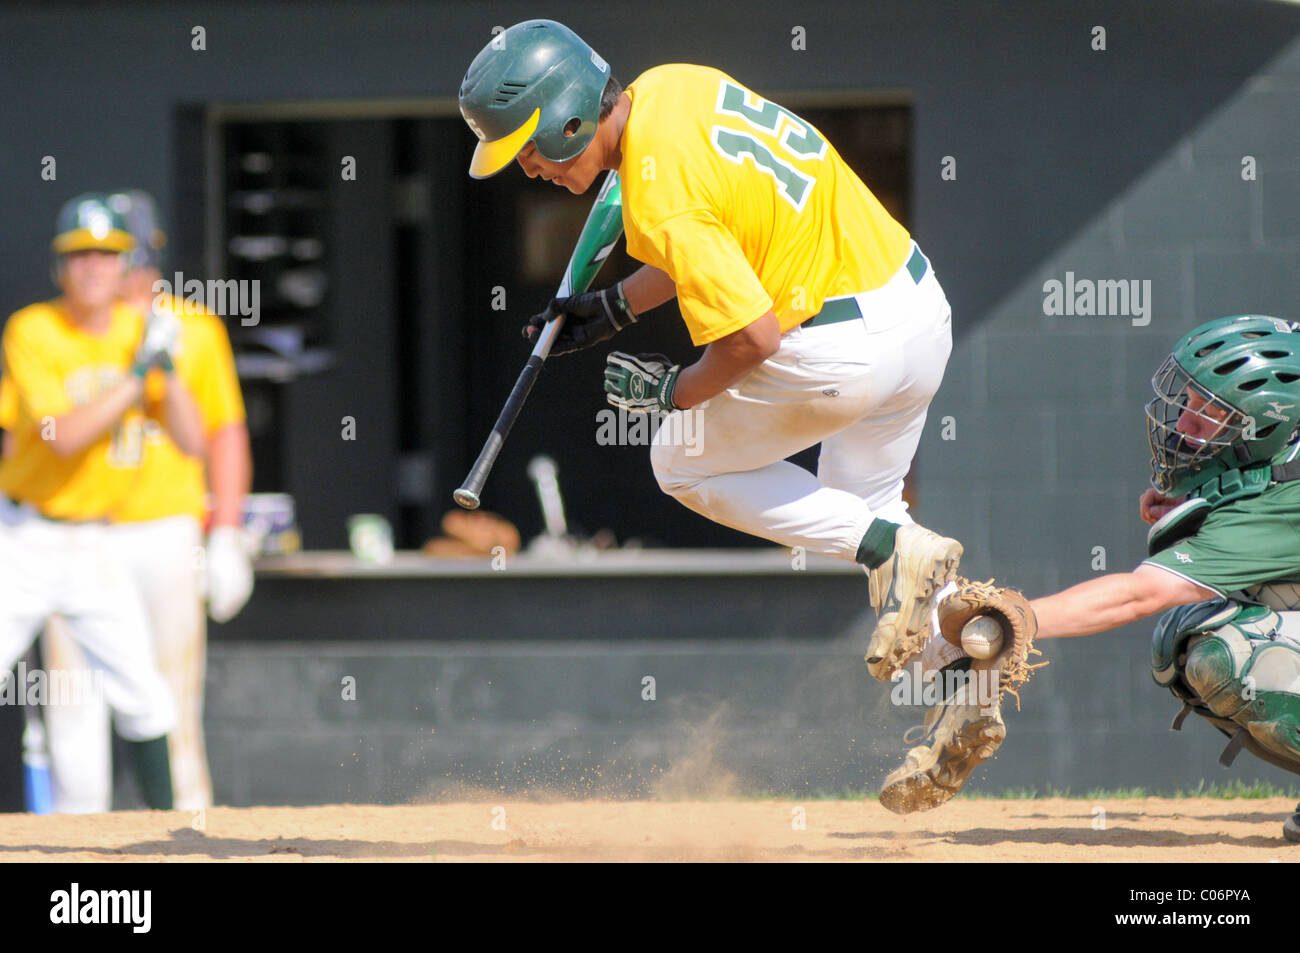 Teig springt aus dem Weg, um zu verhindern, dass die mit dem Pitch bei einem High School Baseball Spiel schlug. USA. Stockfoto